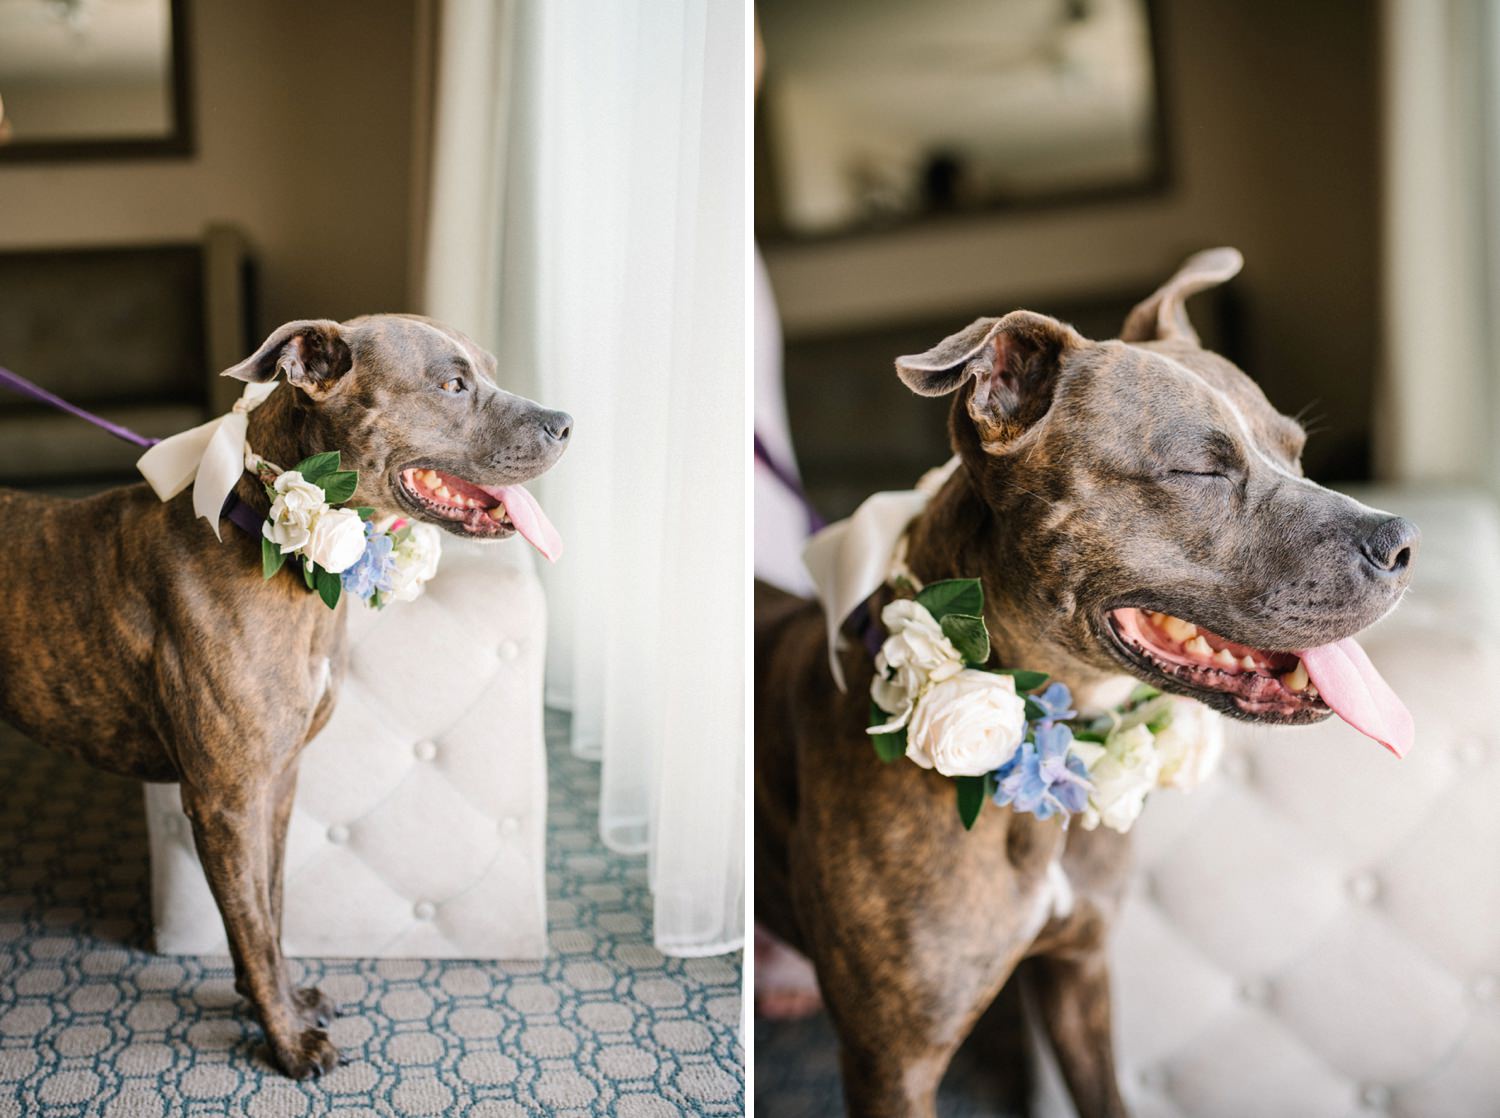 Flower dog collar for dog friendly wedding at Cliffs Hotel Wedding by Pismo Beach Wedding Photographer Austyn Elizabeth Photography